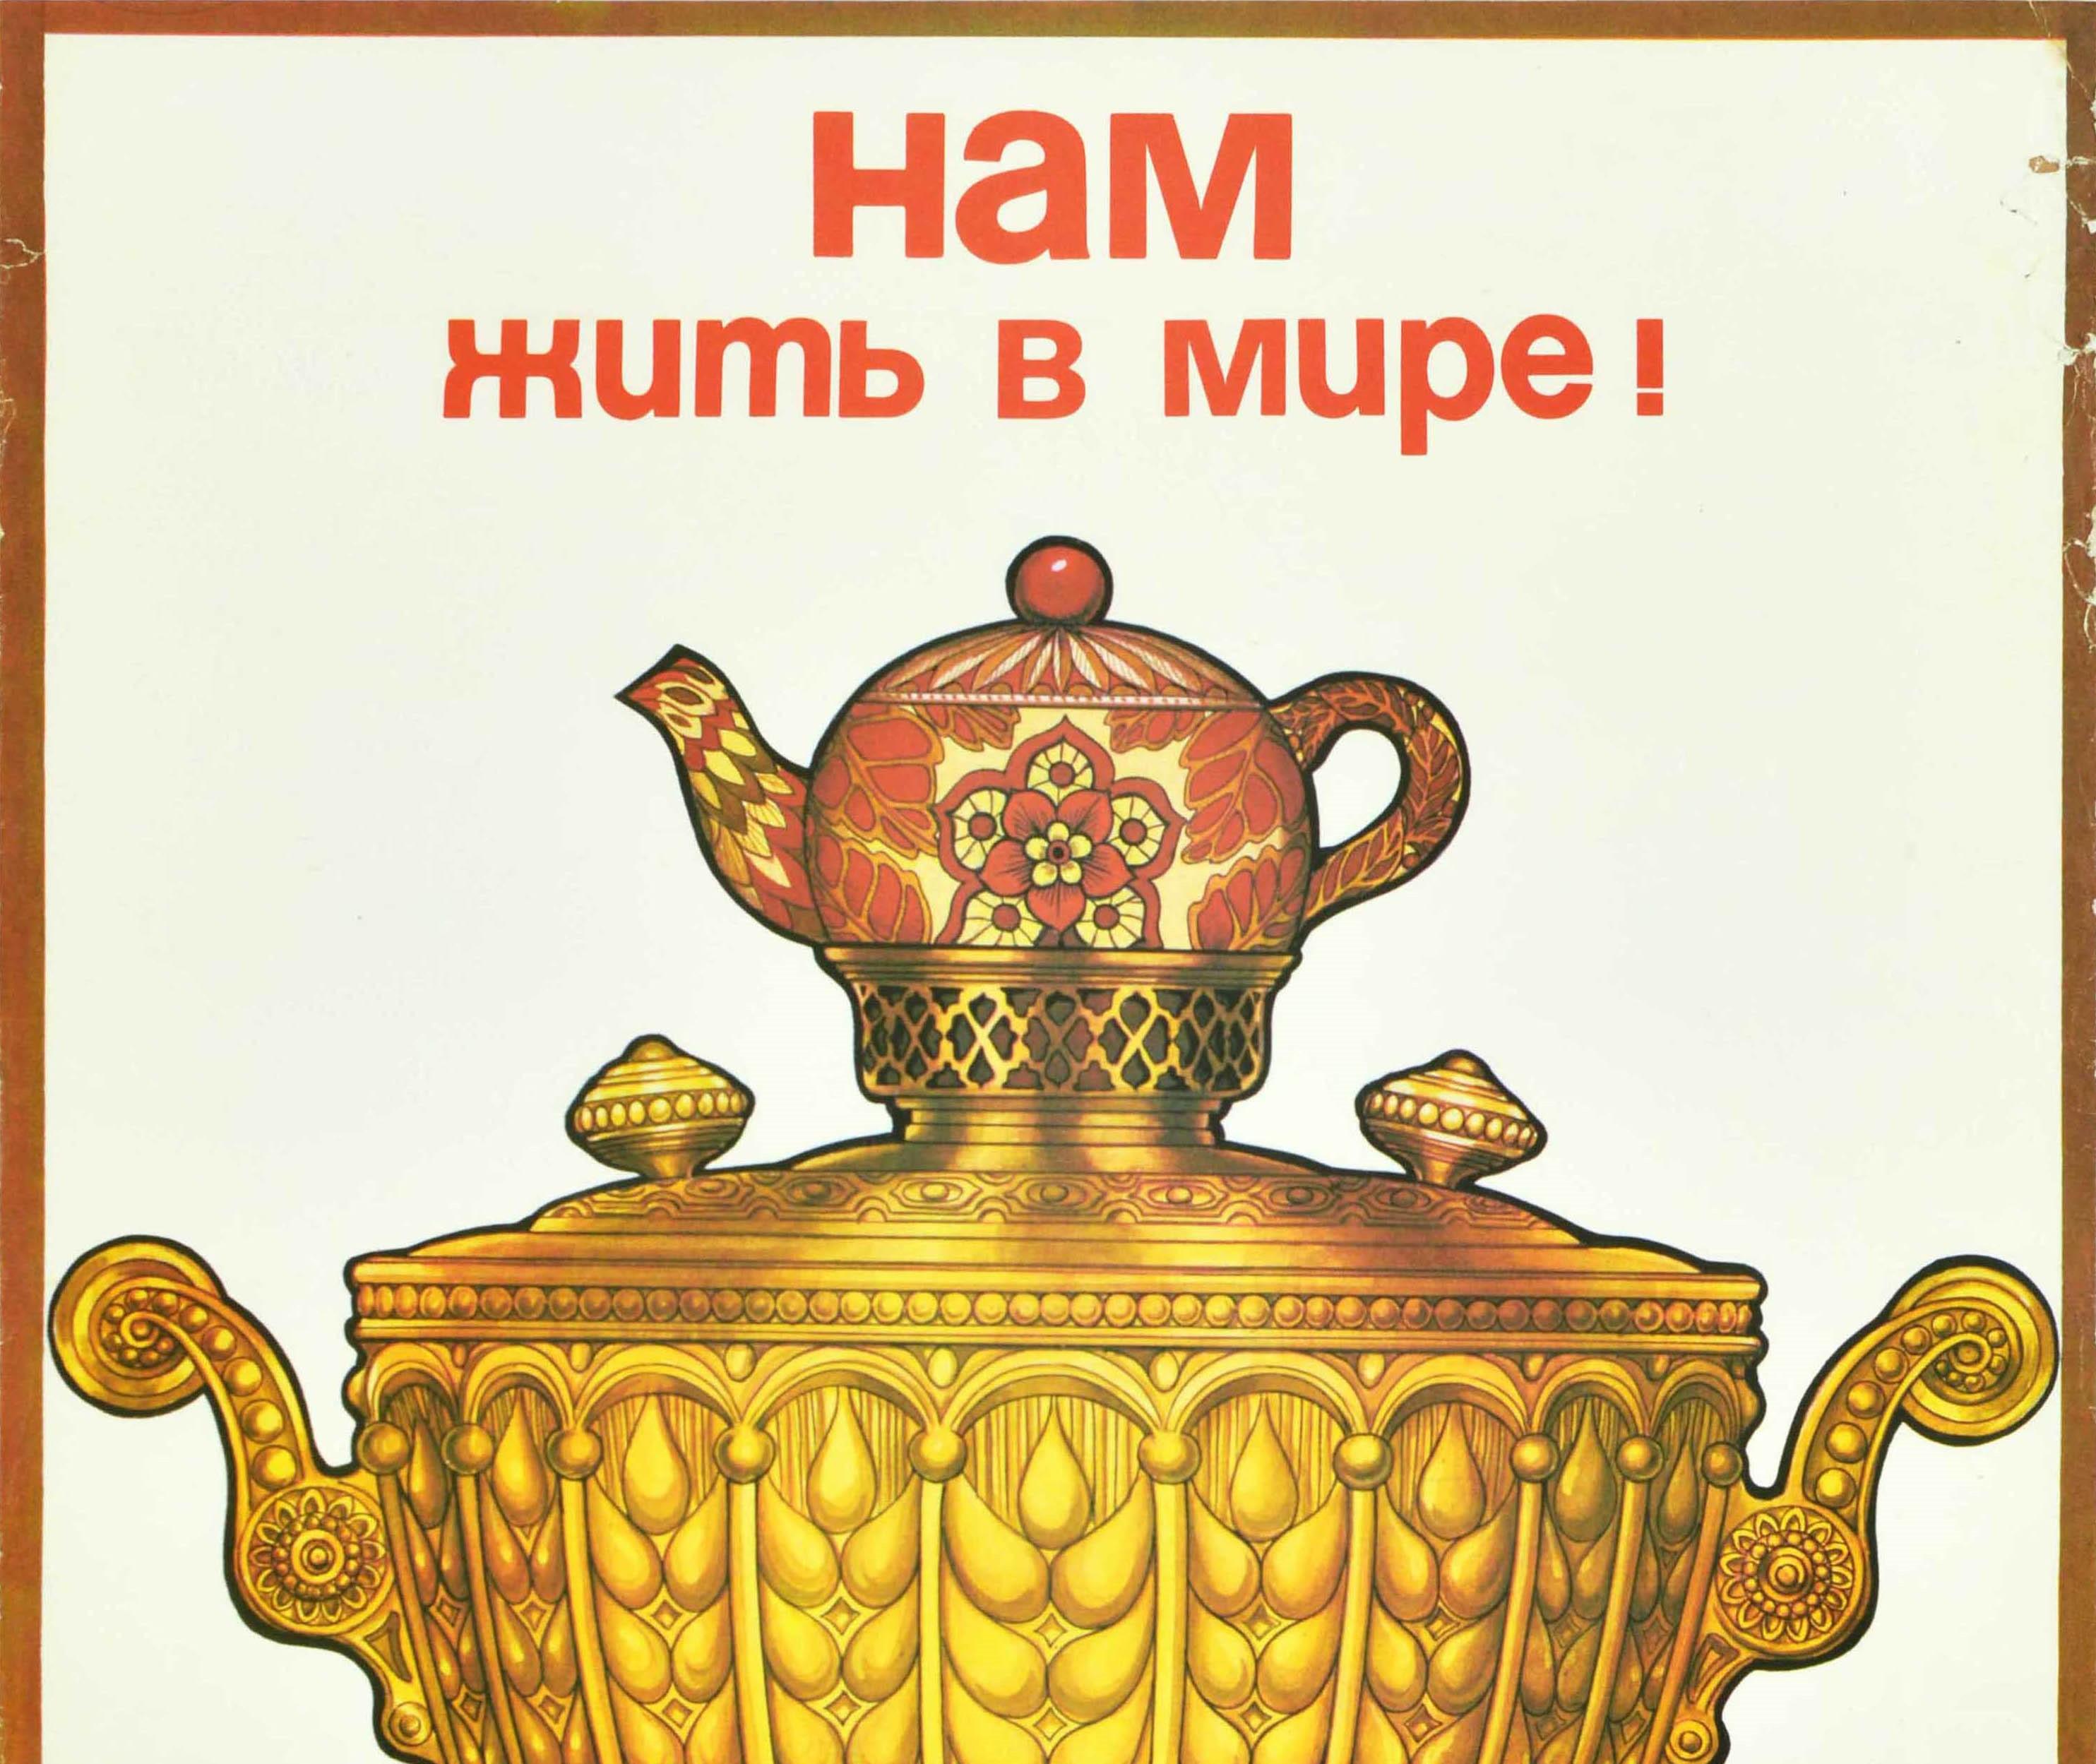 Affiche rétro originale soviétique We Live In Peace (Nous vivons en paix) États-Unis URSS Guerre Froide Thé Samovar - Print de Biryukov